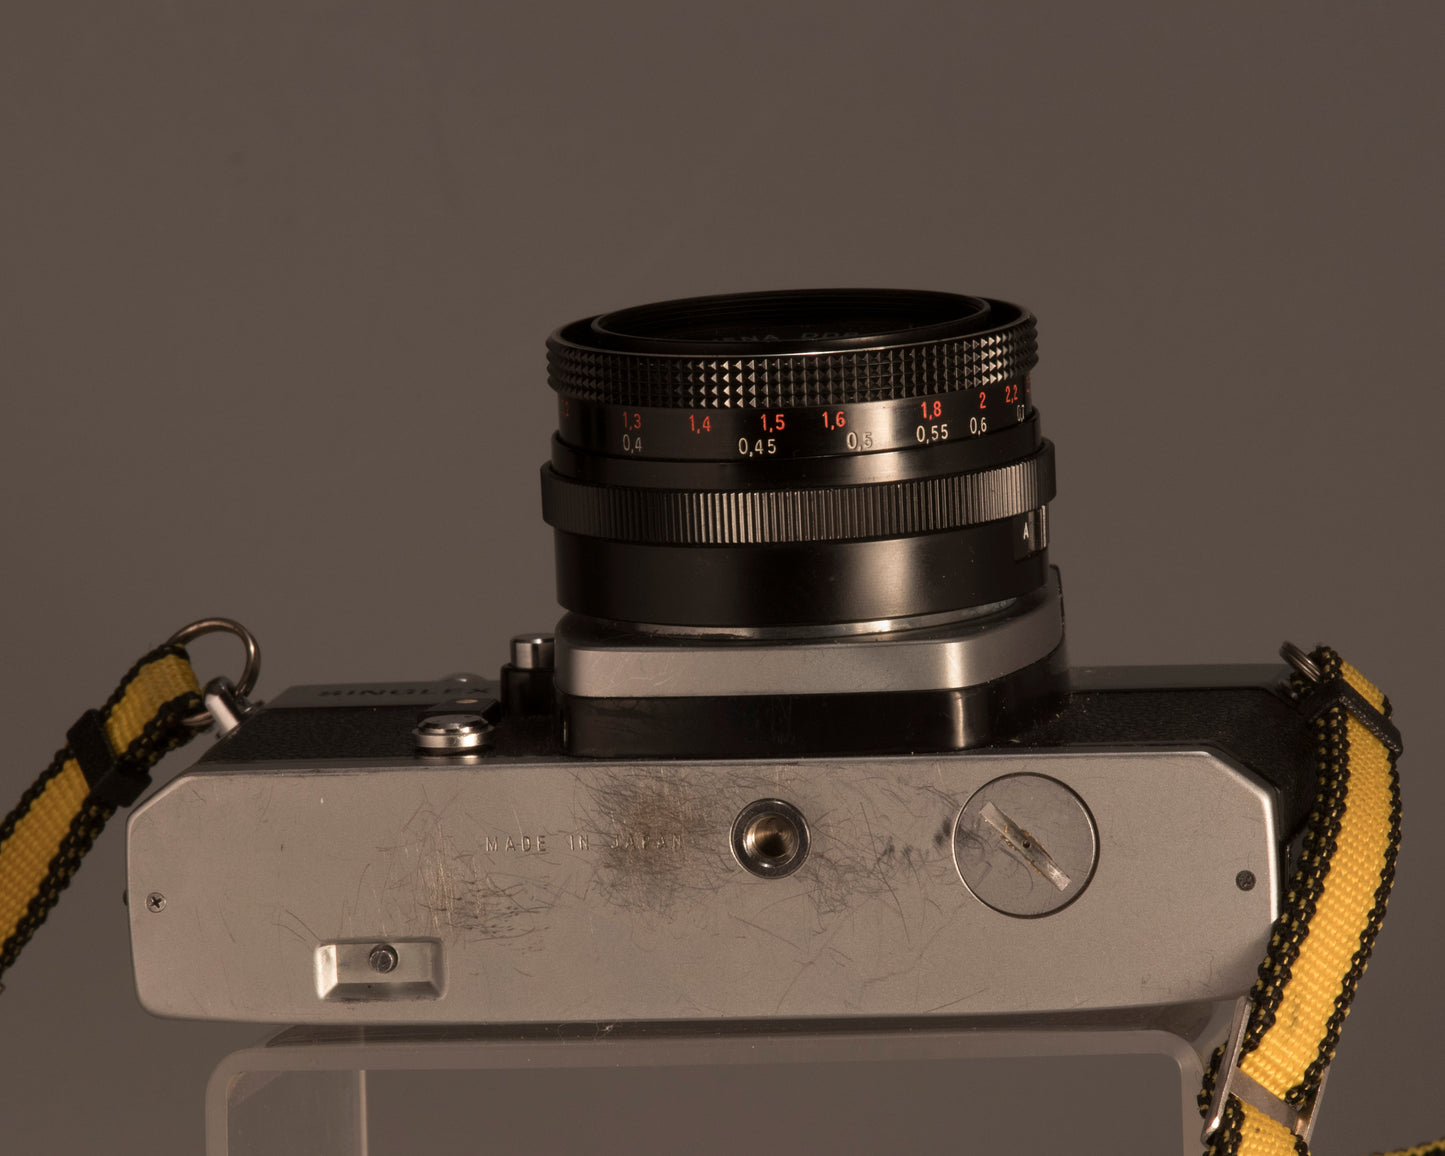 Ricoh Singlex II + Carl Zeiss Jena 50mm lens